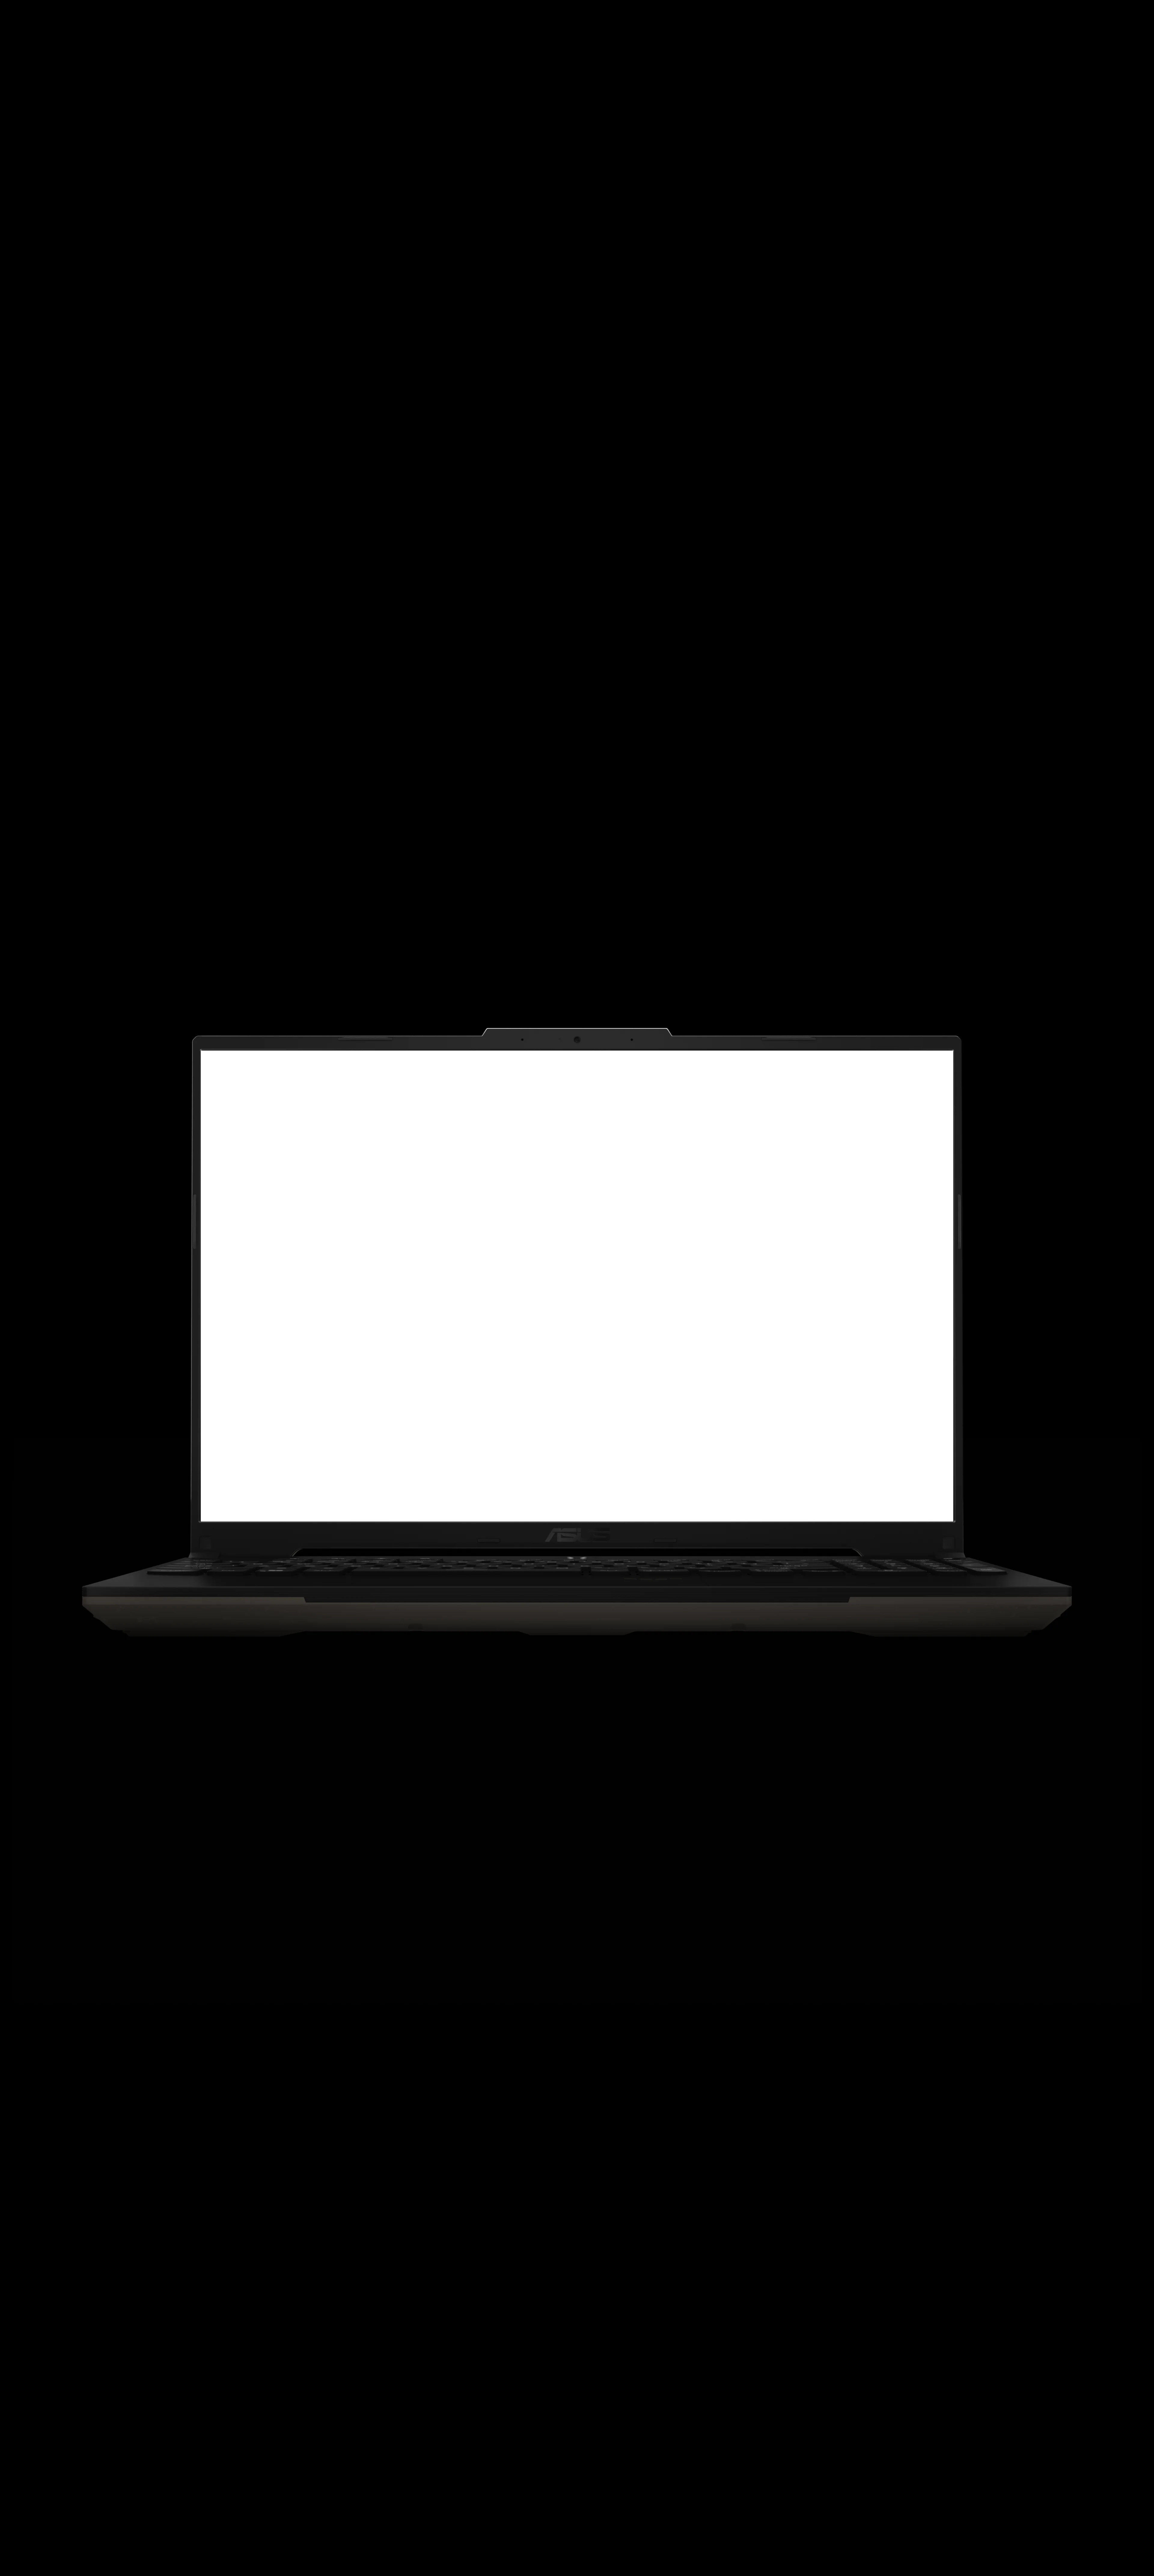 Laptop ASUS A16 Advantage Edition: Potencia gaming en un portátil compacto con procesador AMD Ryzen, gráficos Radeon, pantalla de alta frecuencia de actualización y teclado retroiluminado RGB